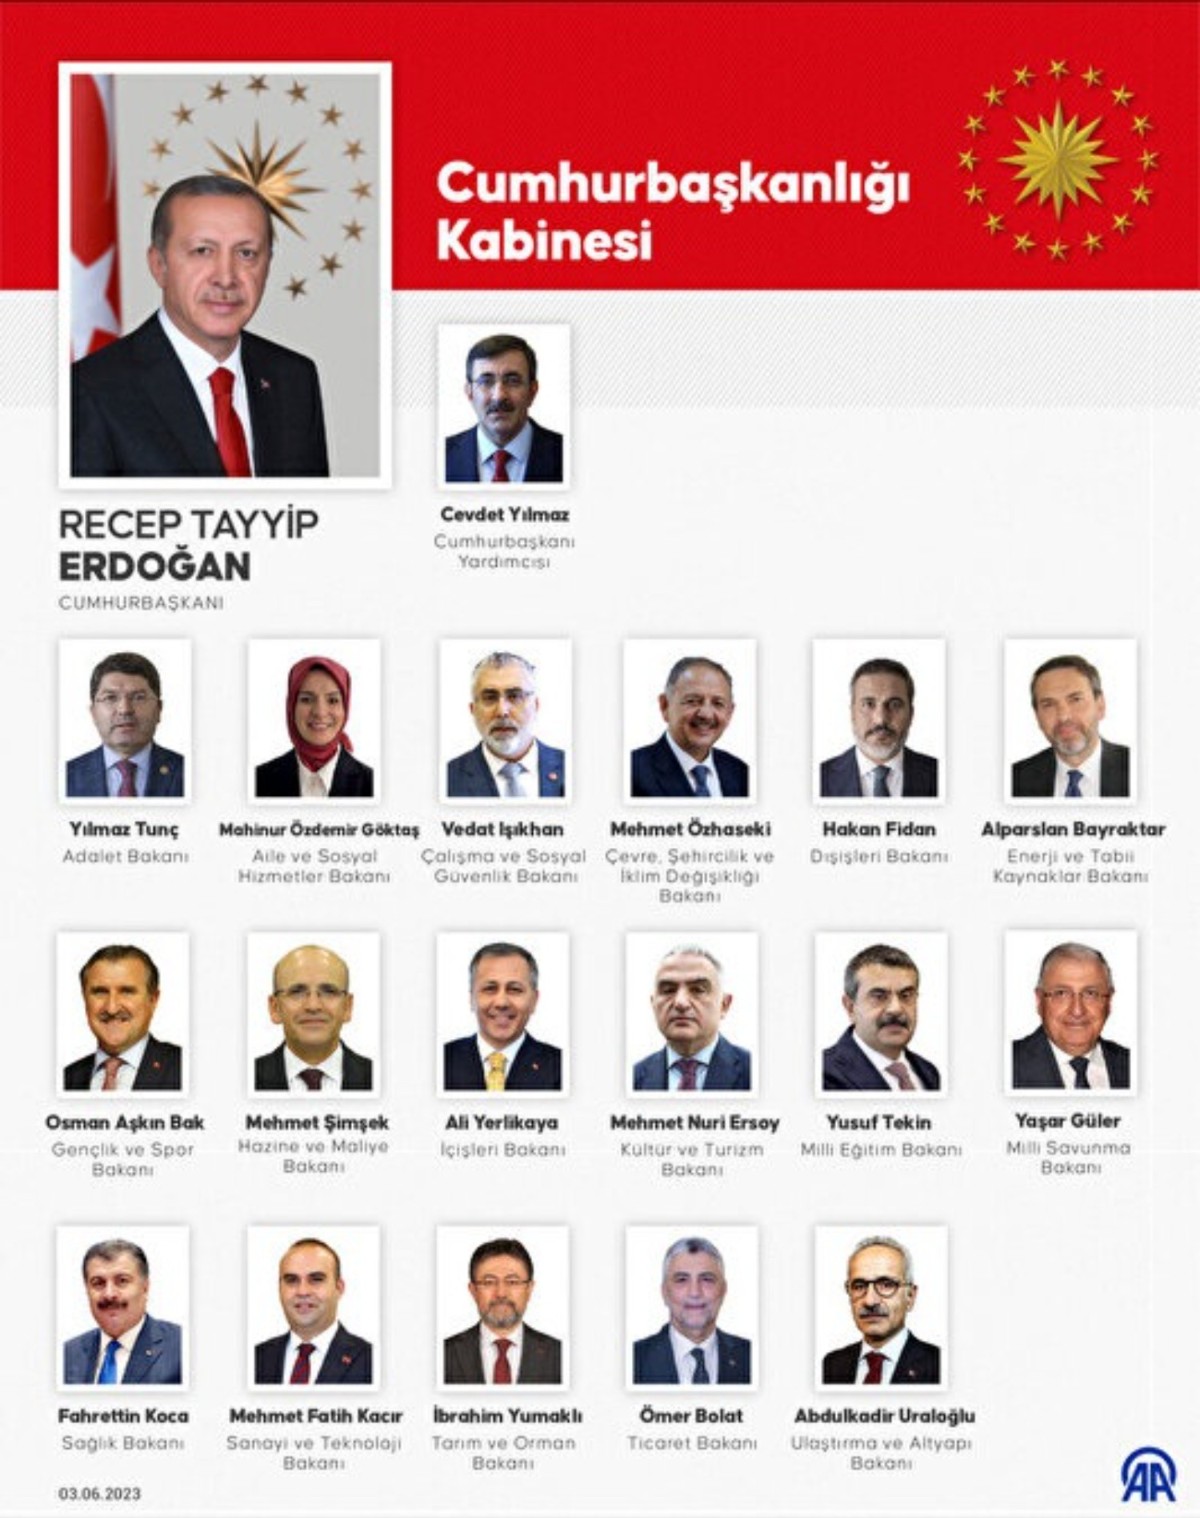 Erdoğan, Çankaya Köşkü'nde yeni Cumhurbaşkanlığı Kabinesi'ni kamuoyuna tek tek tanıttı